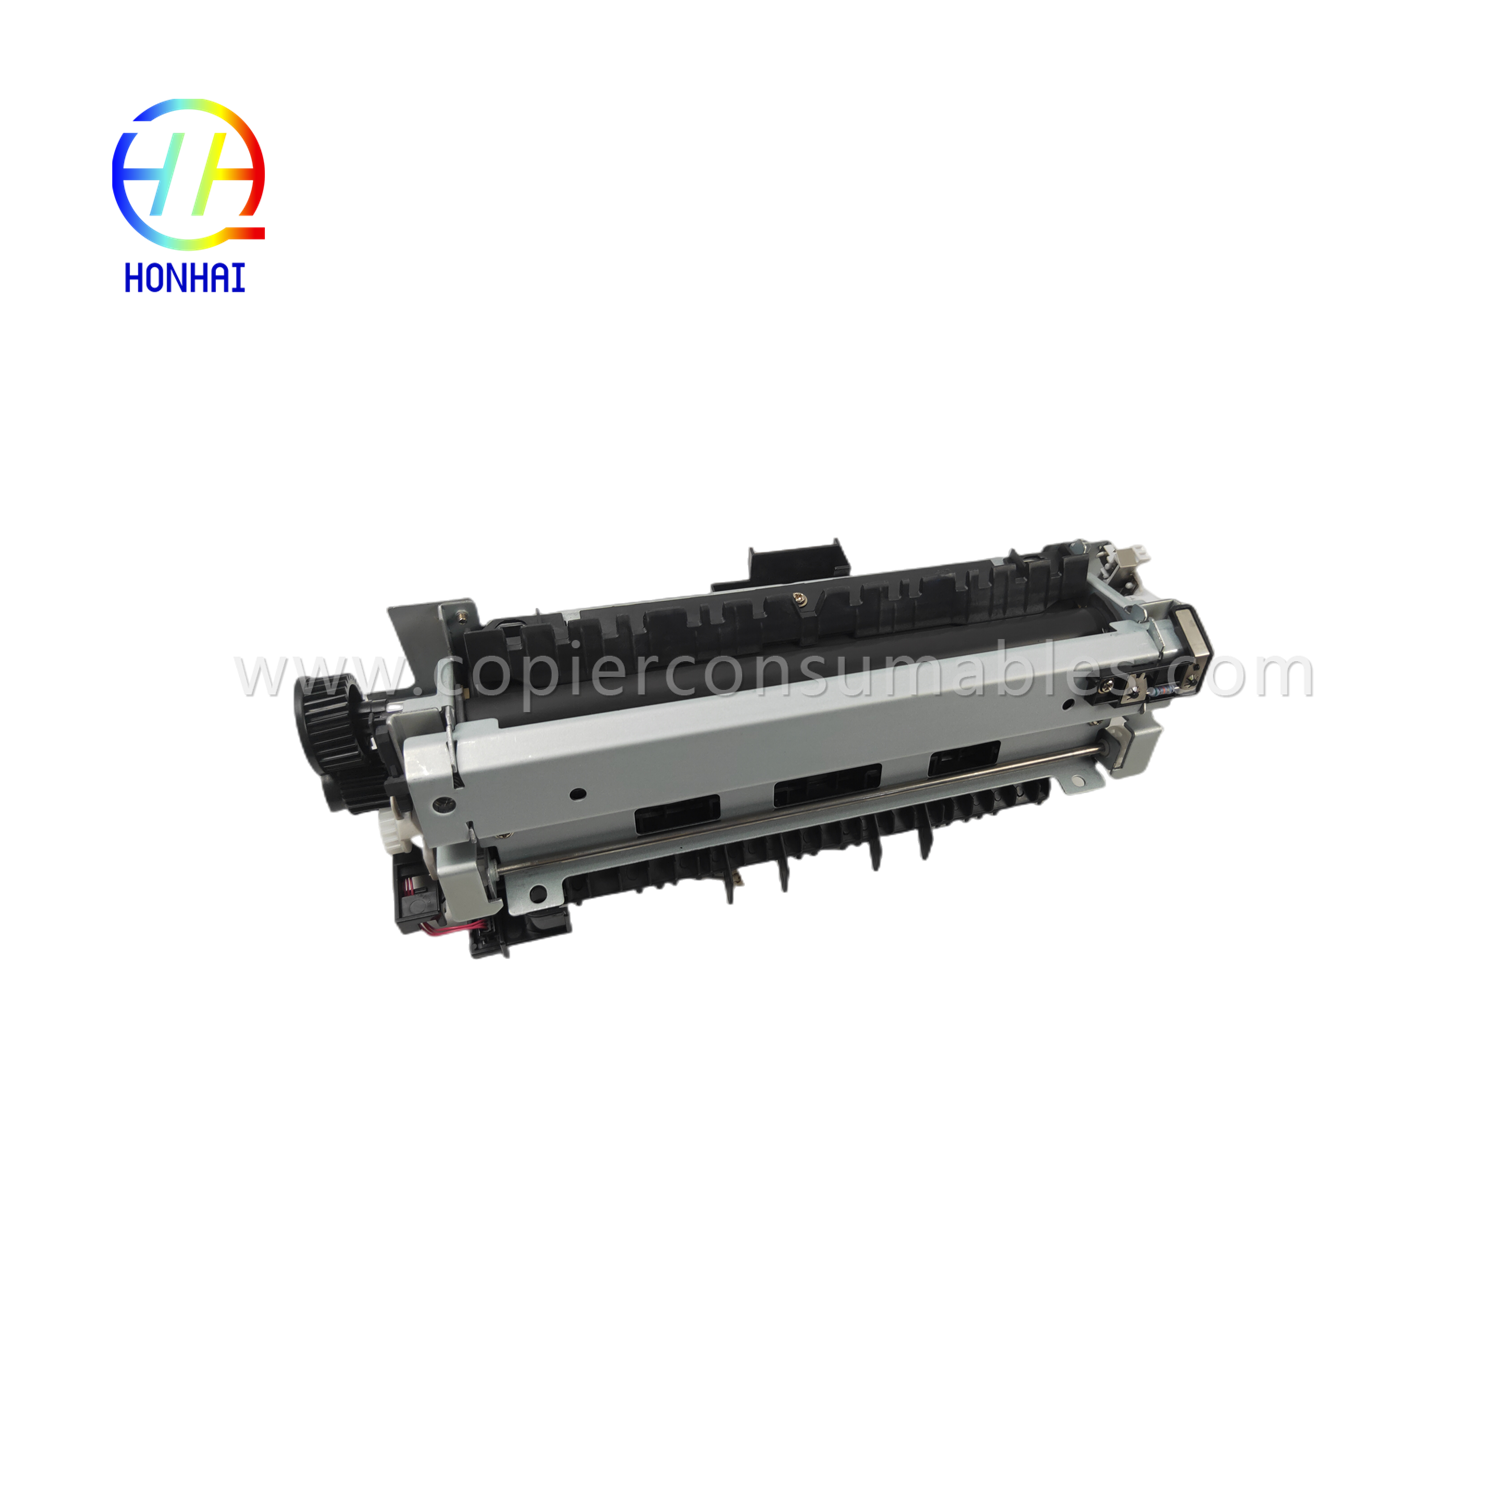 https://c585.goodo.net/fuser-assembly-220v-japan-for-hp-521-525-m521-m525-rm1-8508-rm1-8508-000-fuser-unit-samfurin/